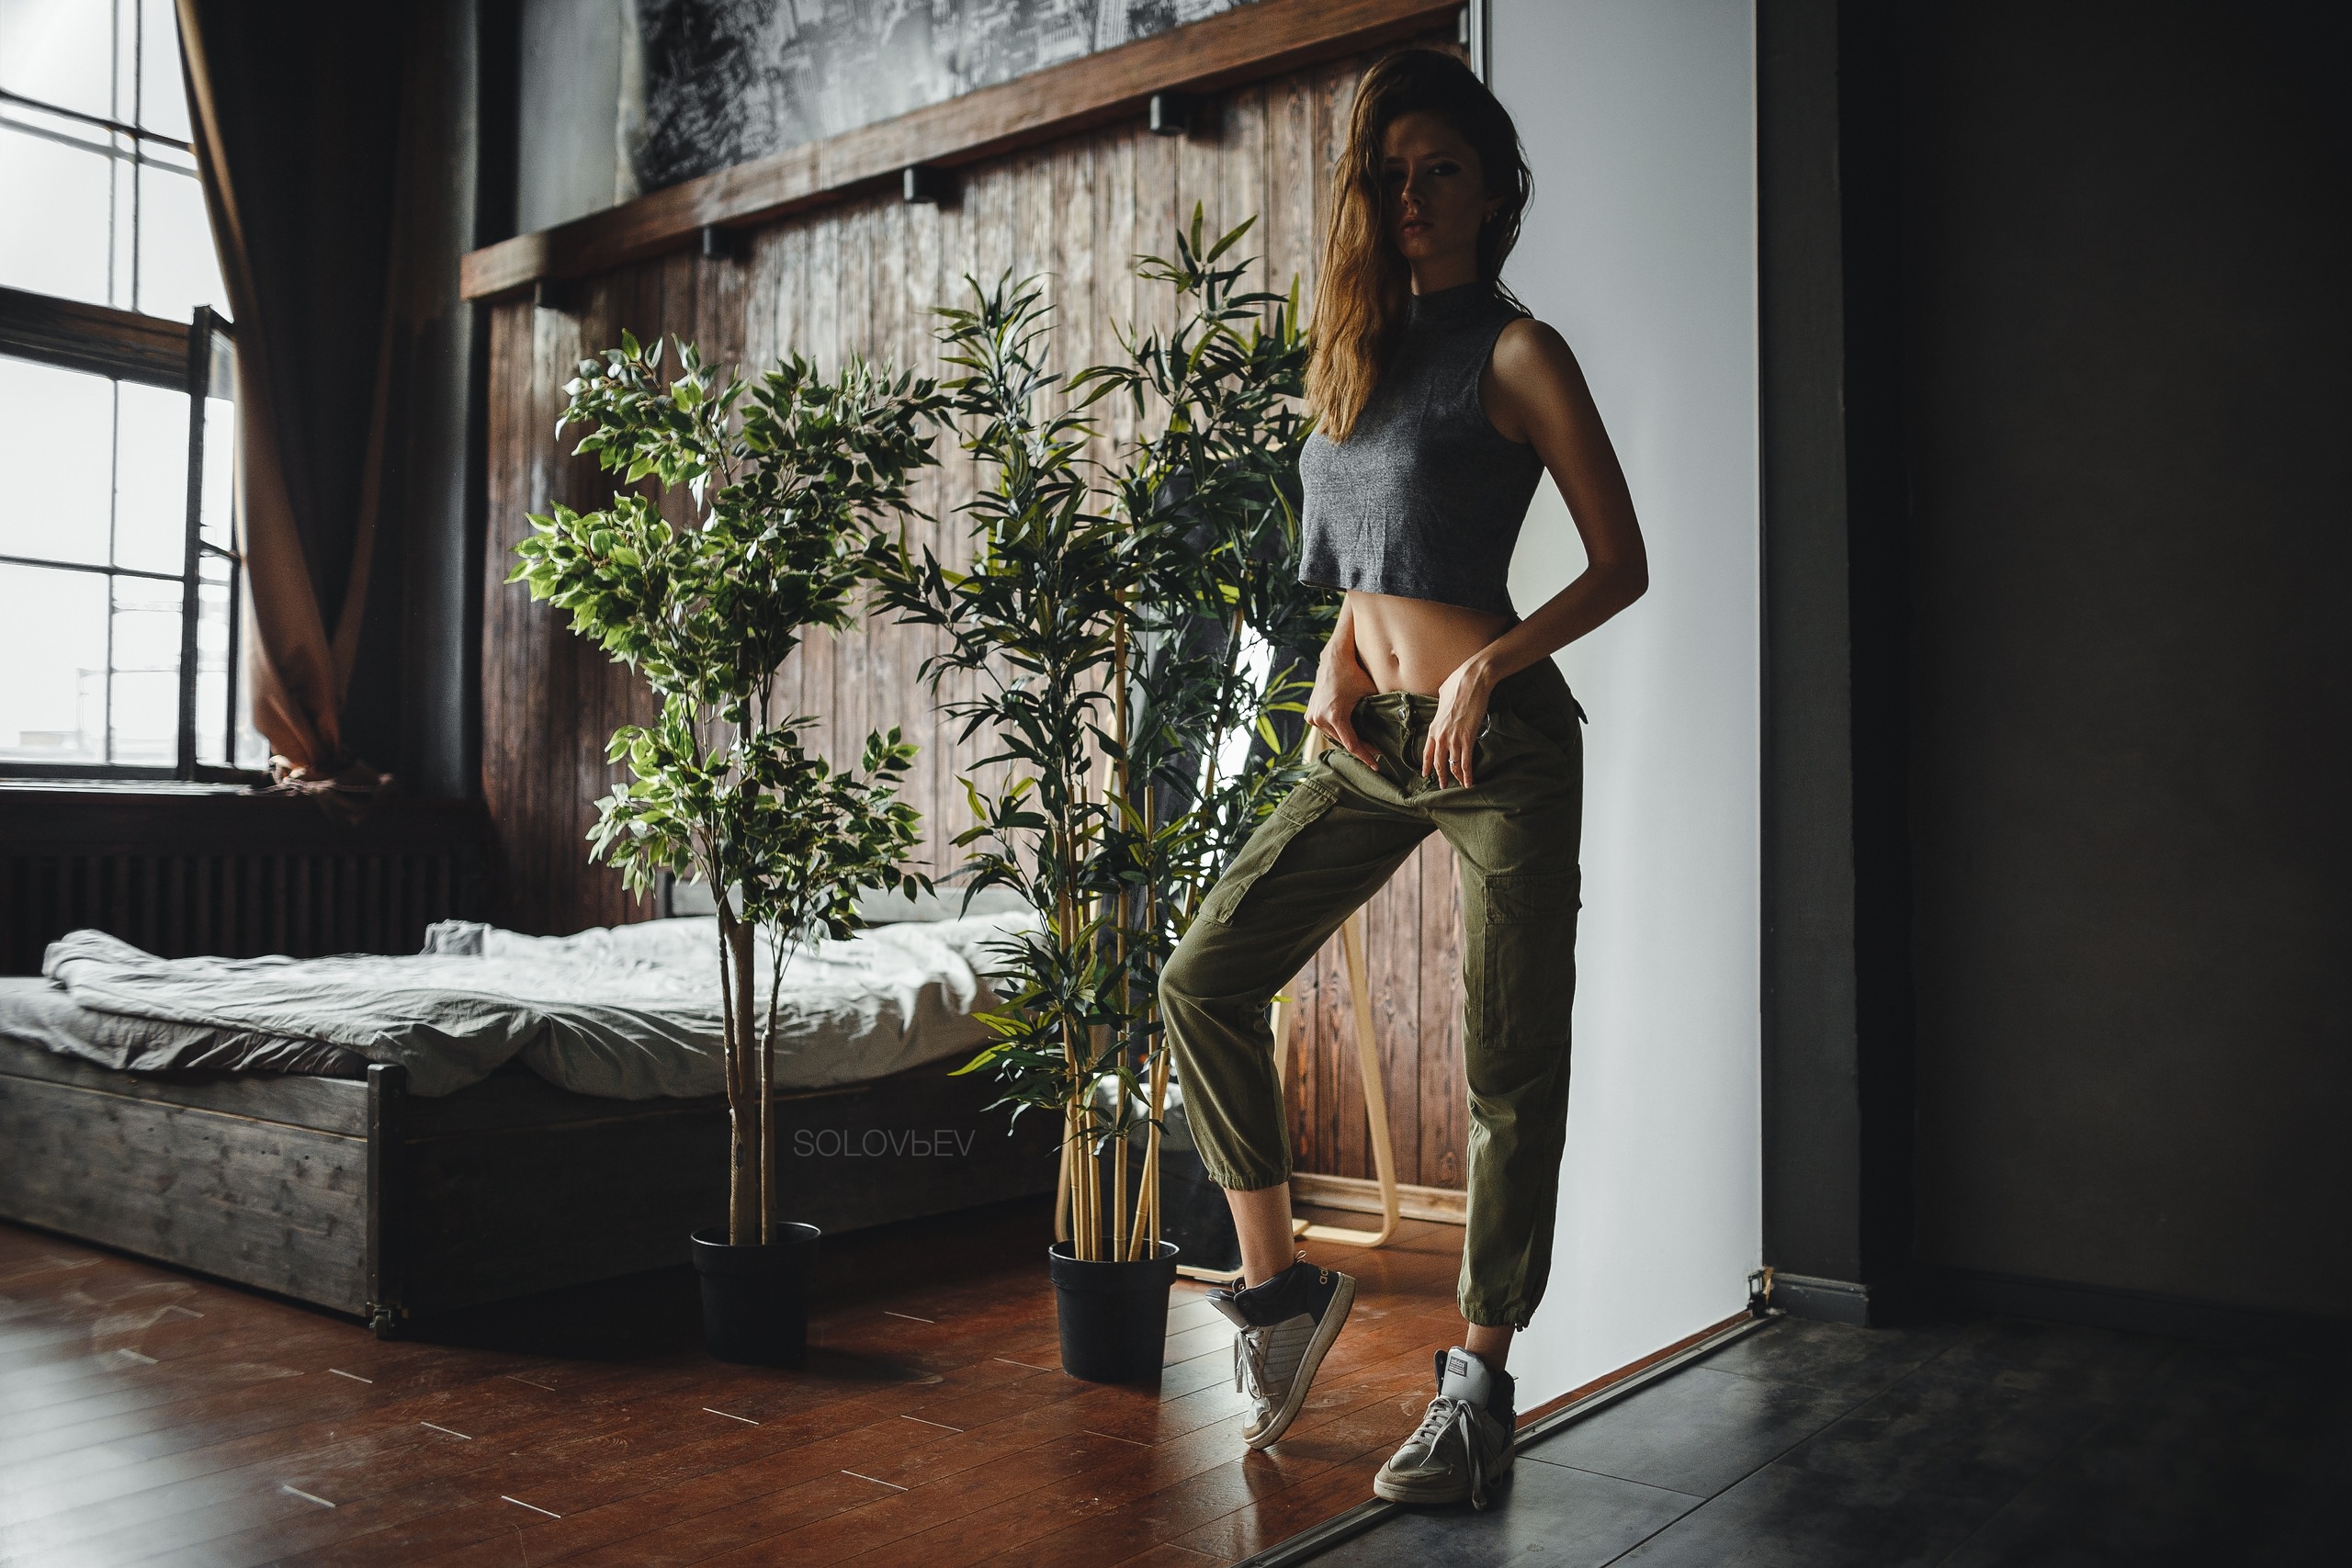 Women Artem Solov Ev Bed Pants Sneakers Plants Window Tank Top Tiptoe 2560x1707